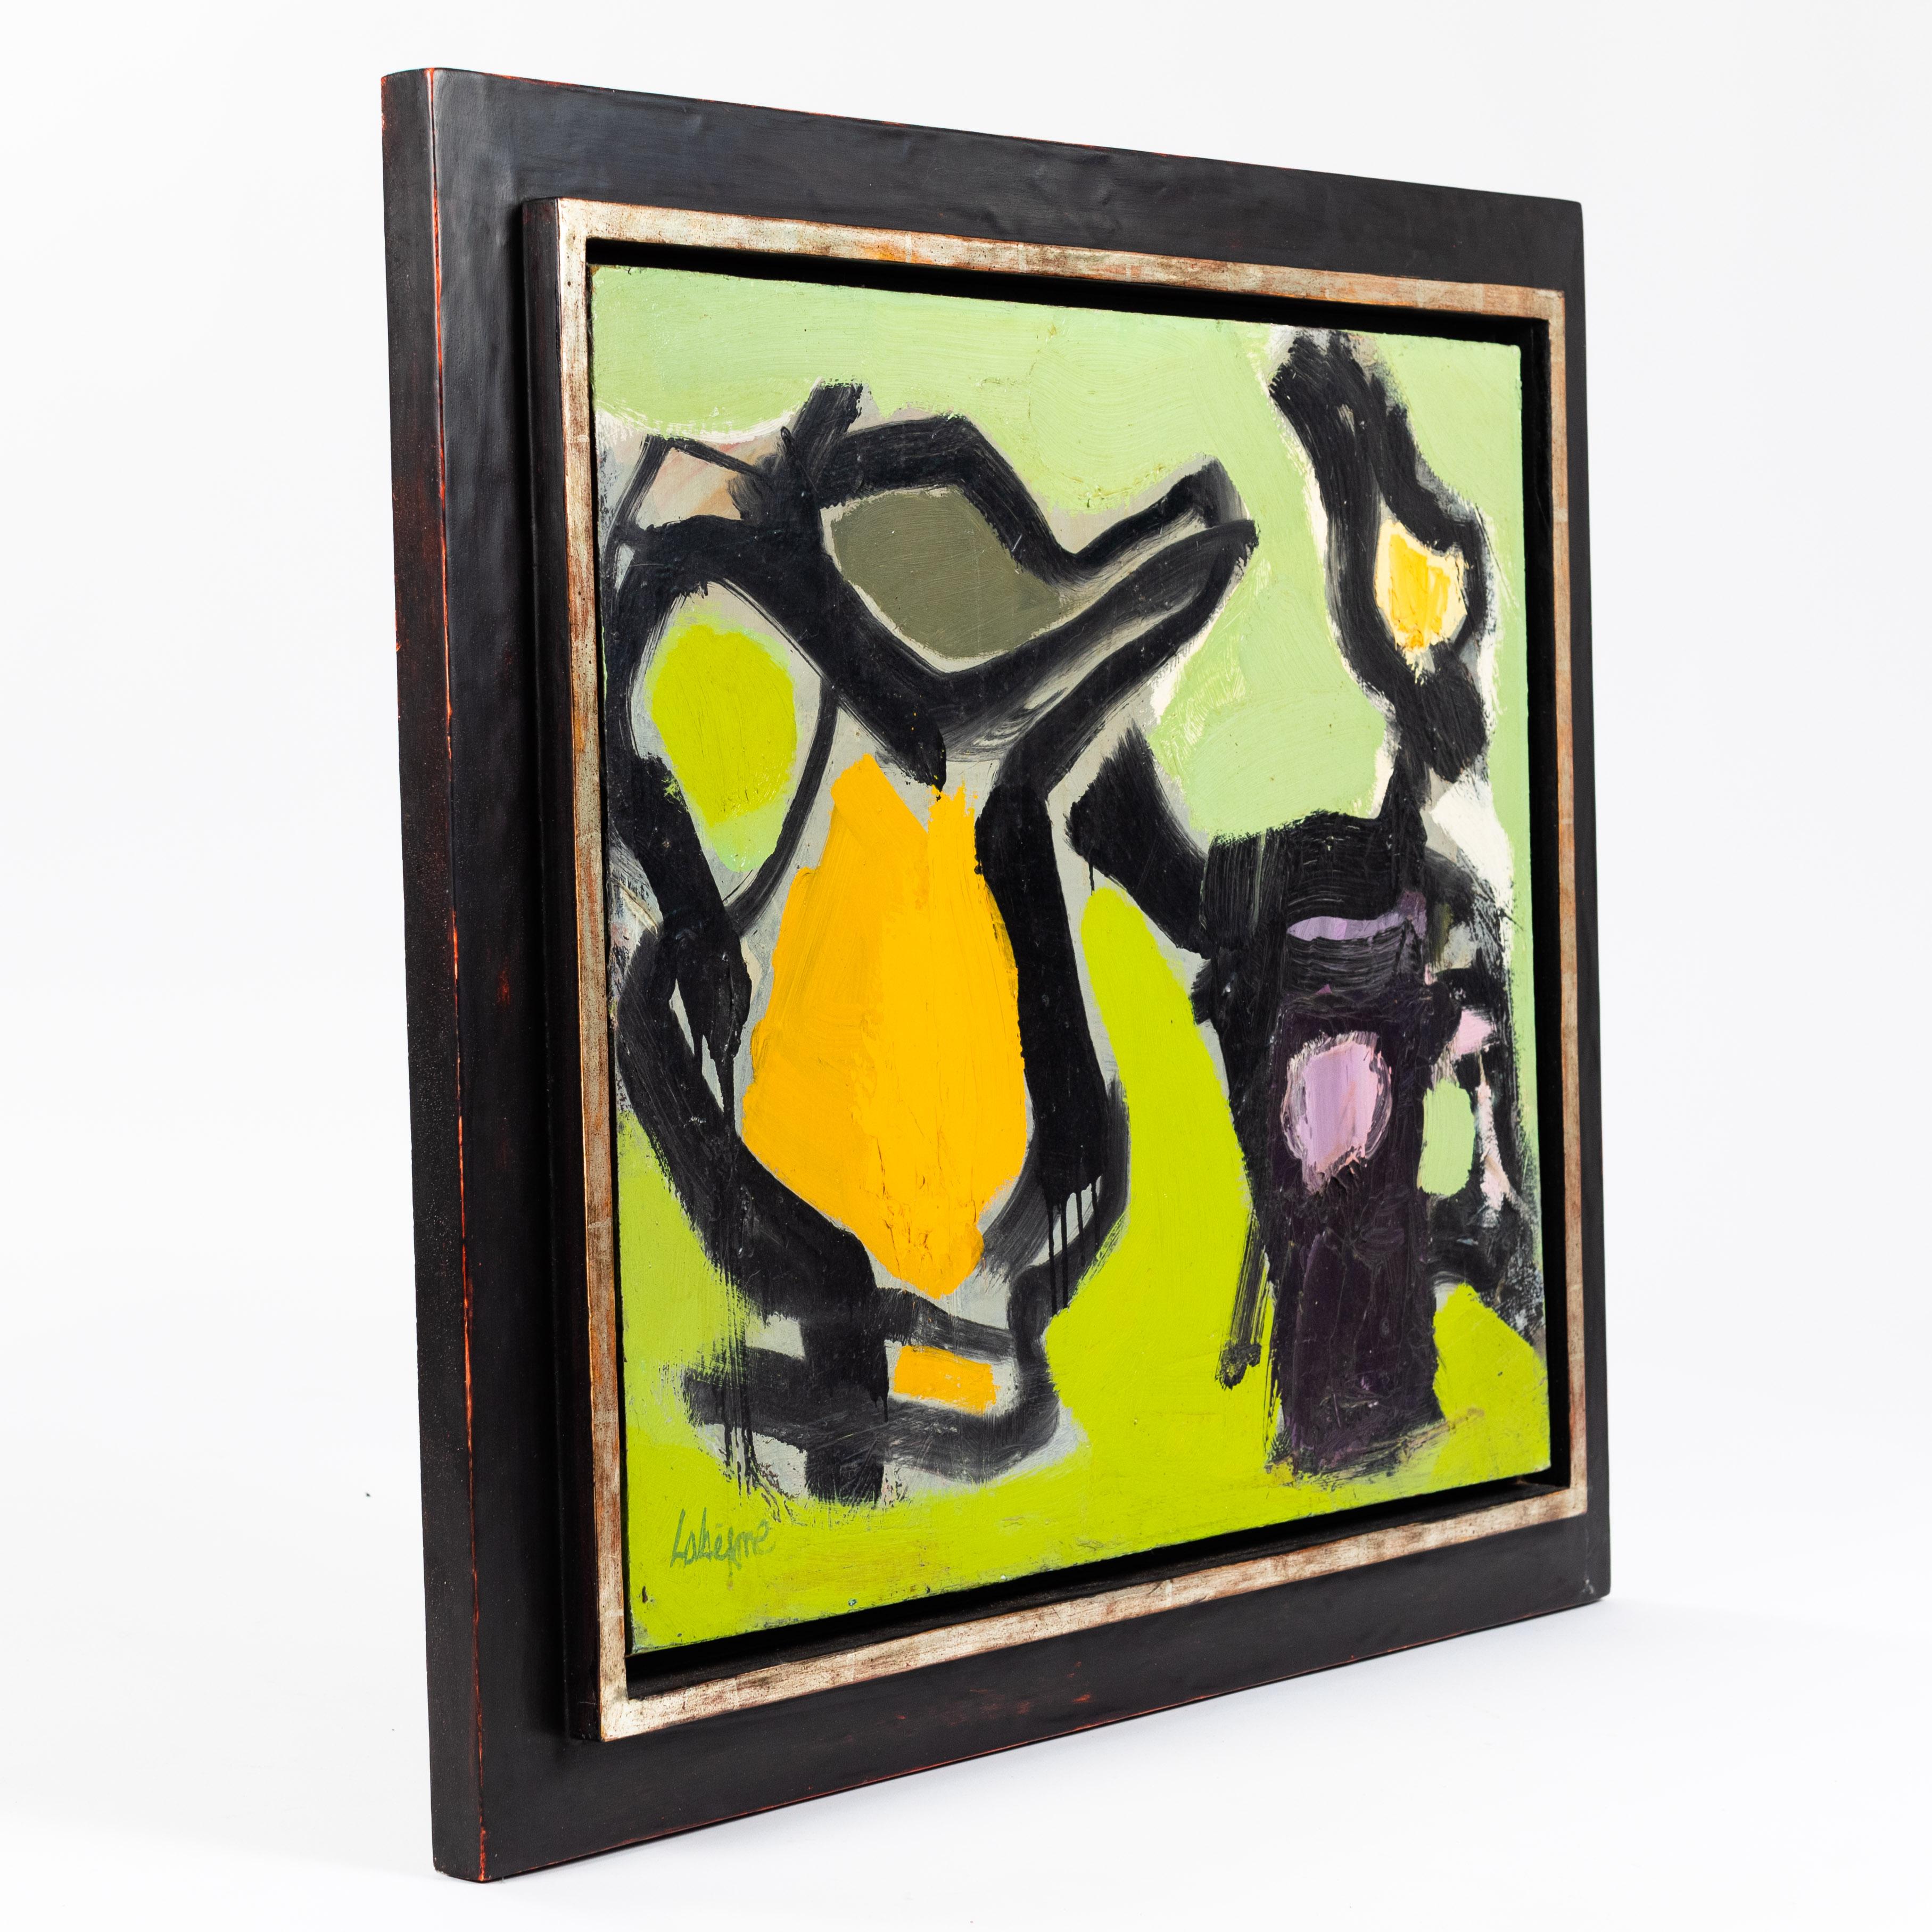 Abstraktes Gemälde in grün-schwarz-orange Farben von Serge Labégorre - professionell gerahmt
Leidenschaftliches, mit dicken Pinselstrichen aus Acrylfarbe gestaltetes Stillleben, das durch die schwarze Umrahmung der Objekte noch plastischer und